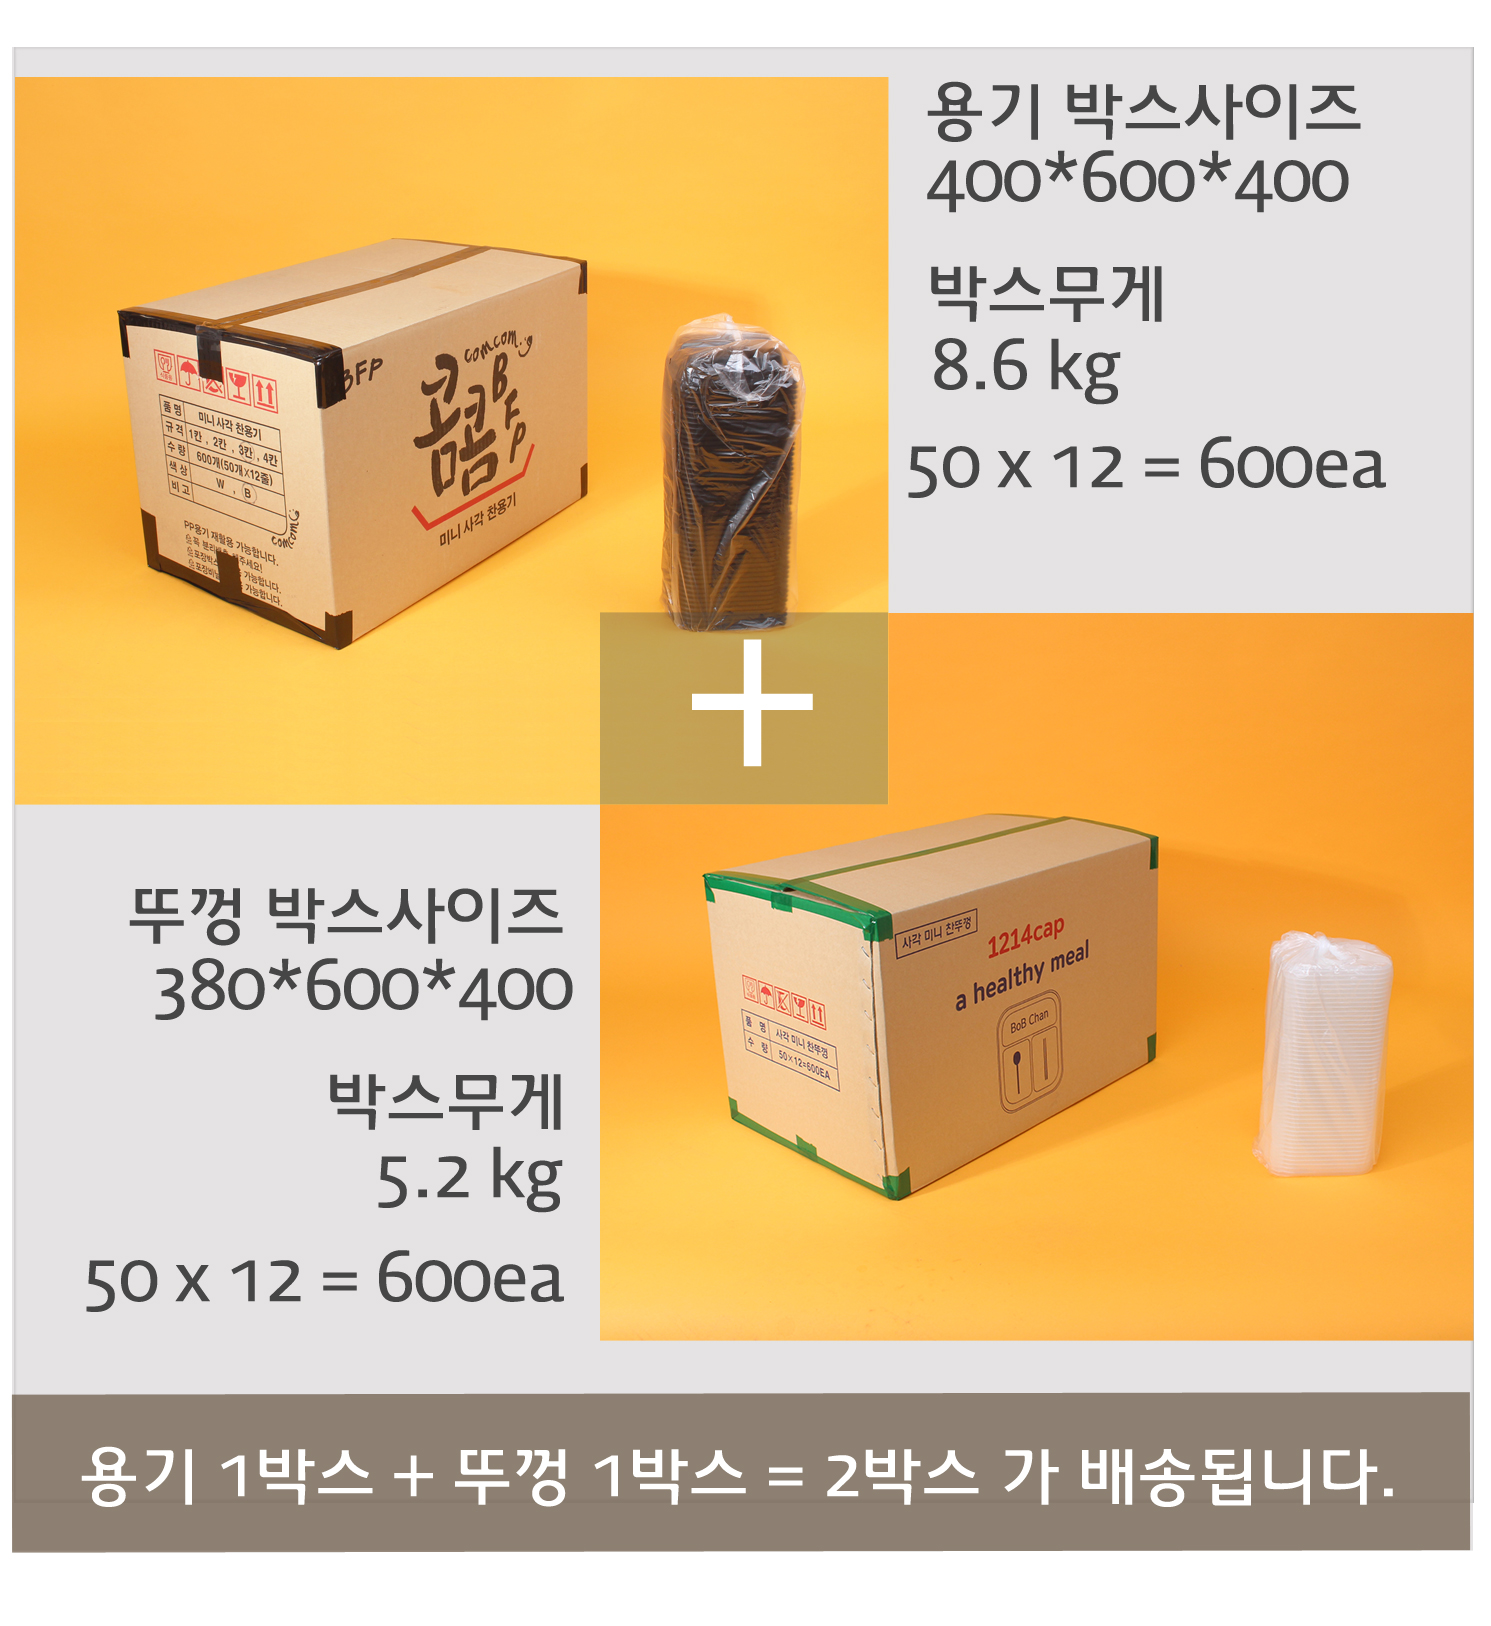 배송되는 포장용기의 박스 이미지와 사이즈 무게가 표기되어있다.